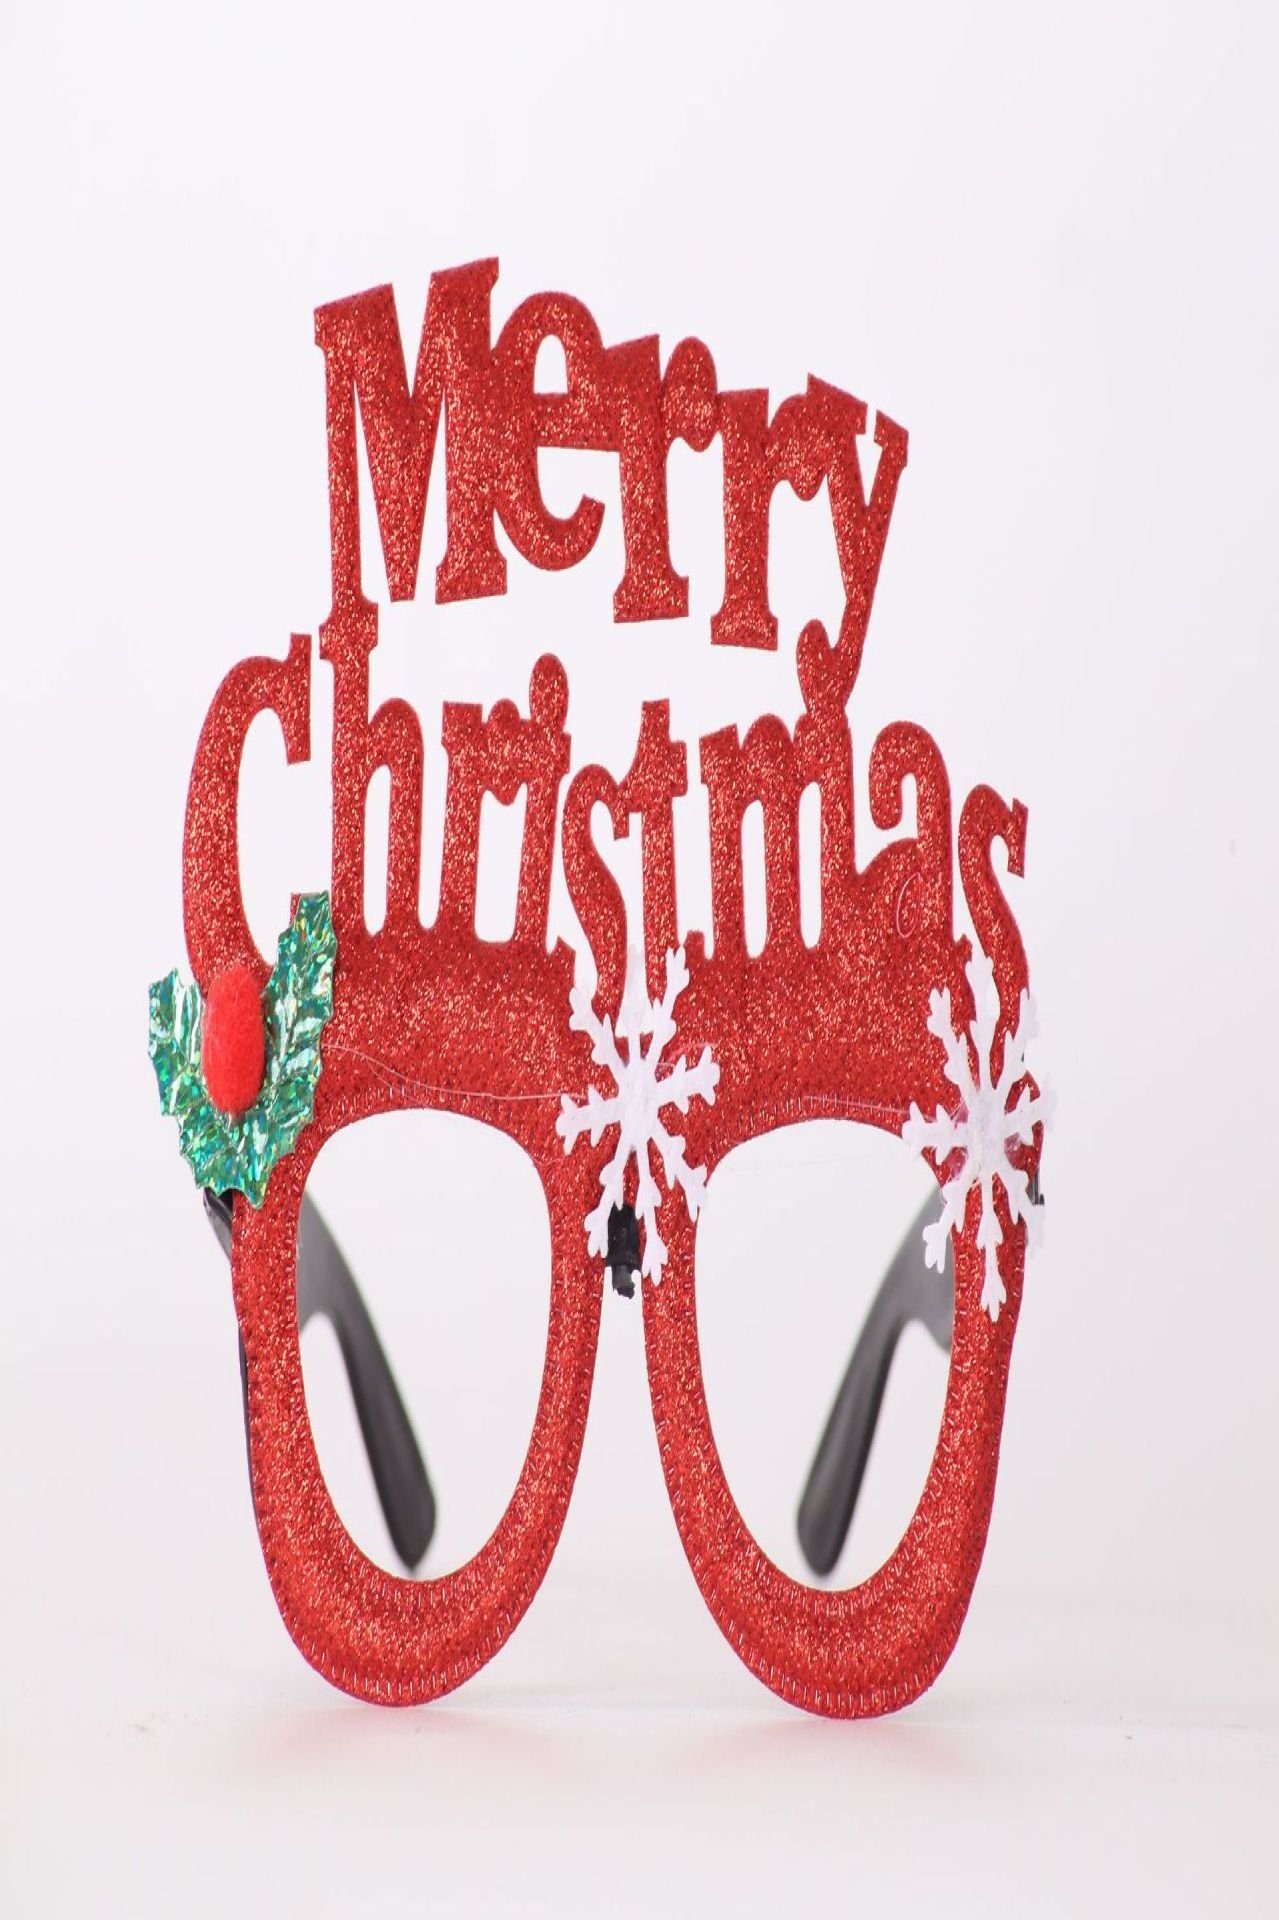 Blusmart Fahrradbrille Neuartiger Weihnachts-Brillenrahmen, 6 Glänzende Weihnachtsmann-Brille